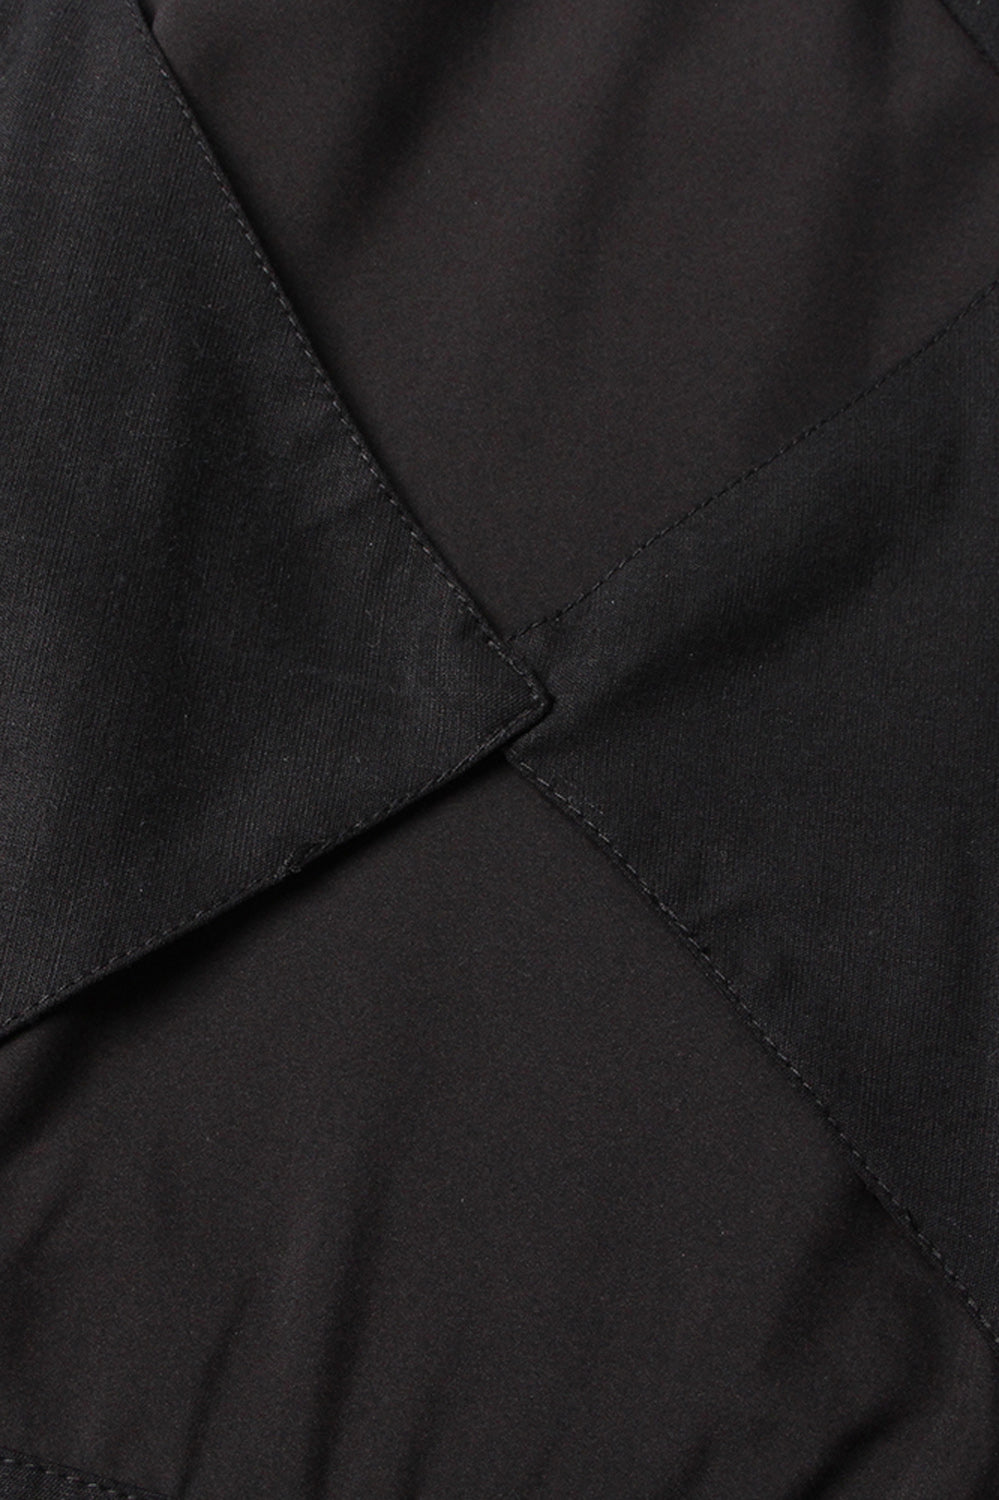 Midi Dress with Back Cuts - Black